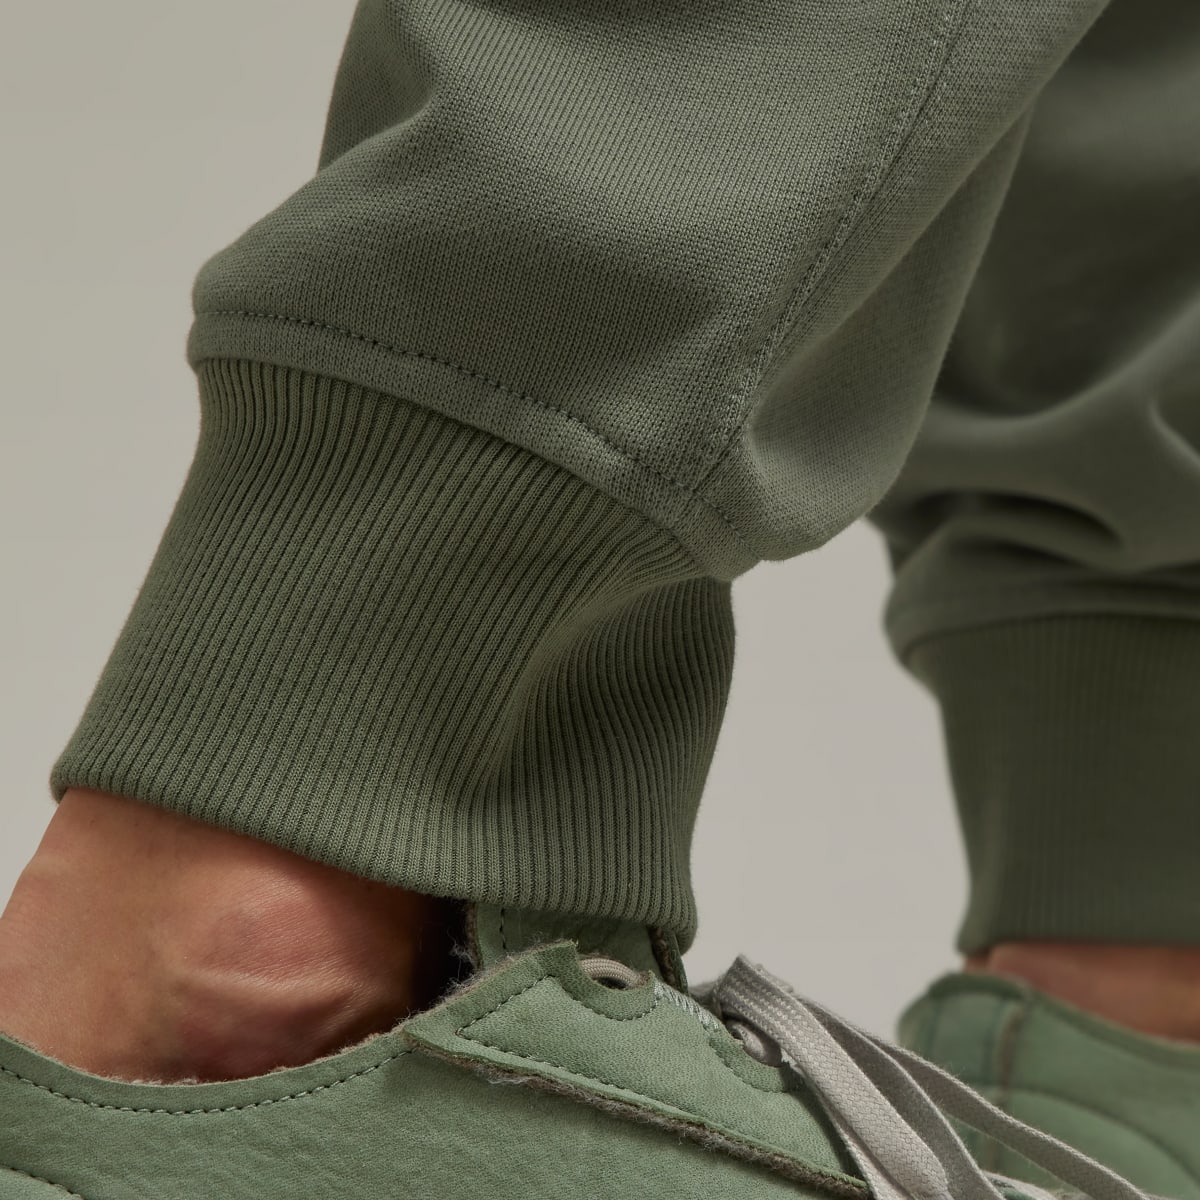 adidas Y-3 Organic Cotton Terry Cuffed Pants - Grey